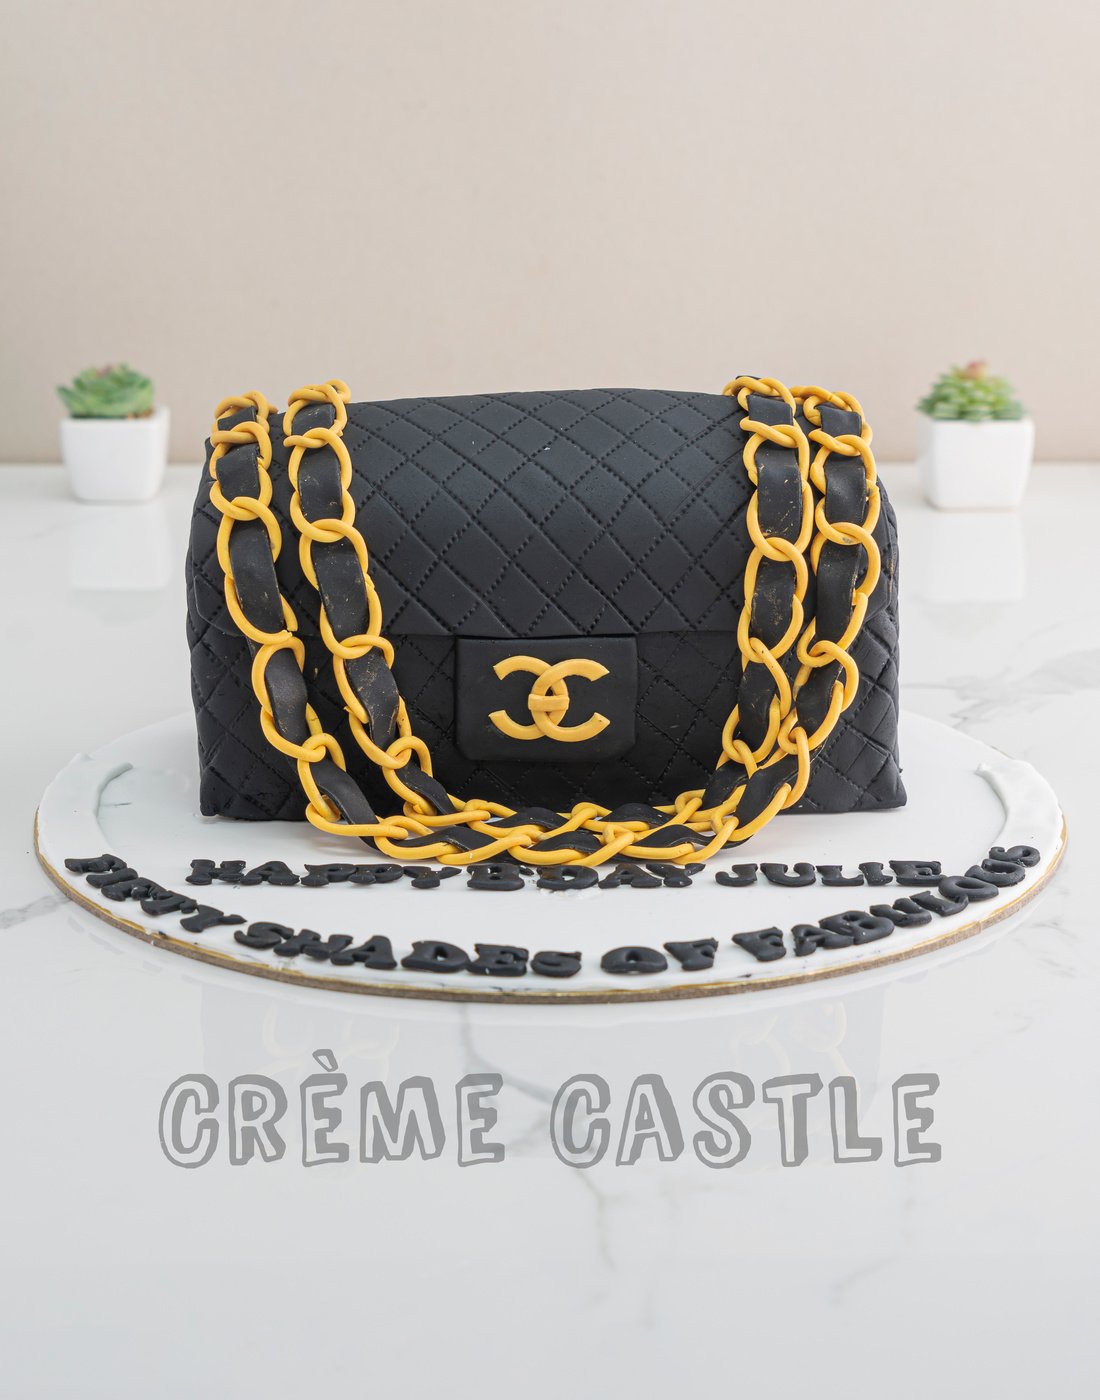 Classy Chanel Bag Cake | bakehoney.com